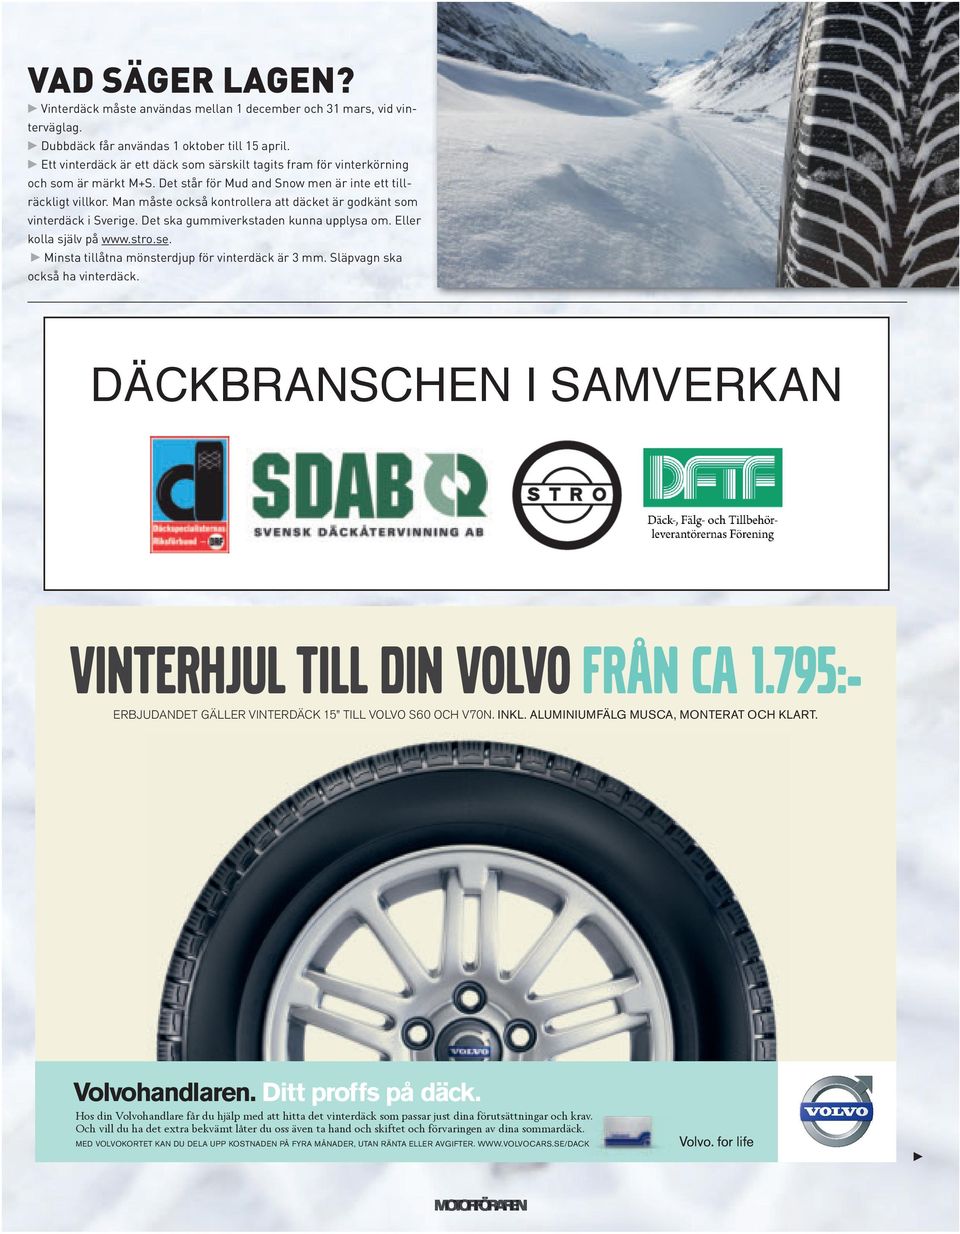 Man måste också kontrollera att däcket är godkänt som vinterdäck i Sverige. Det ska gummiverkstaden kunna upplysa om. Eller kolla själv på www.stro.se.